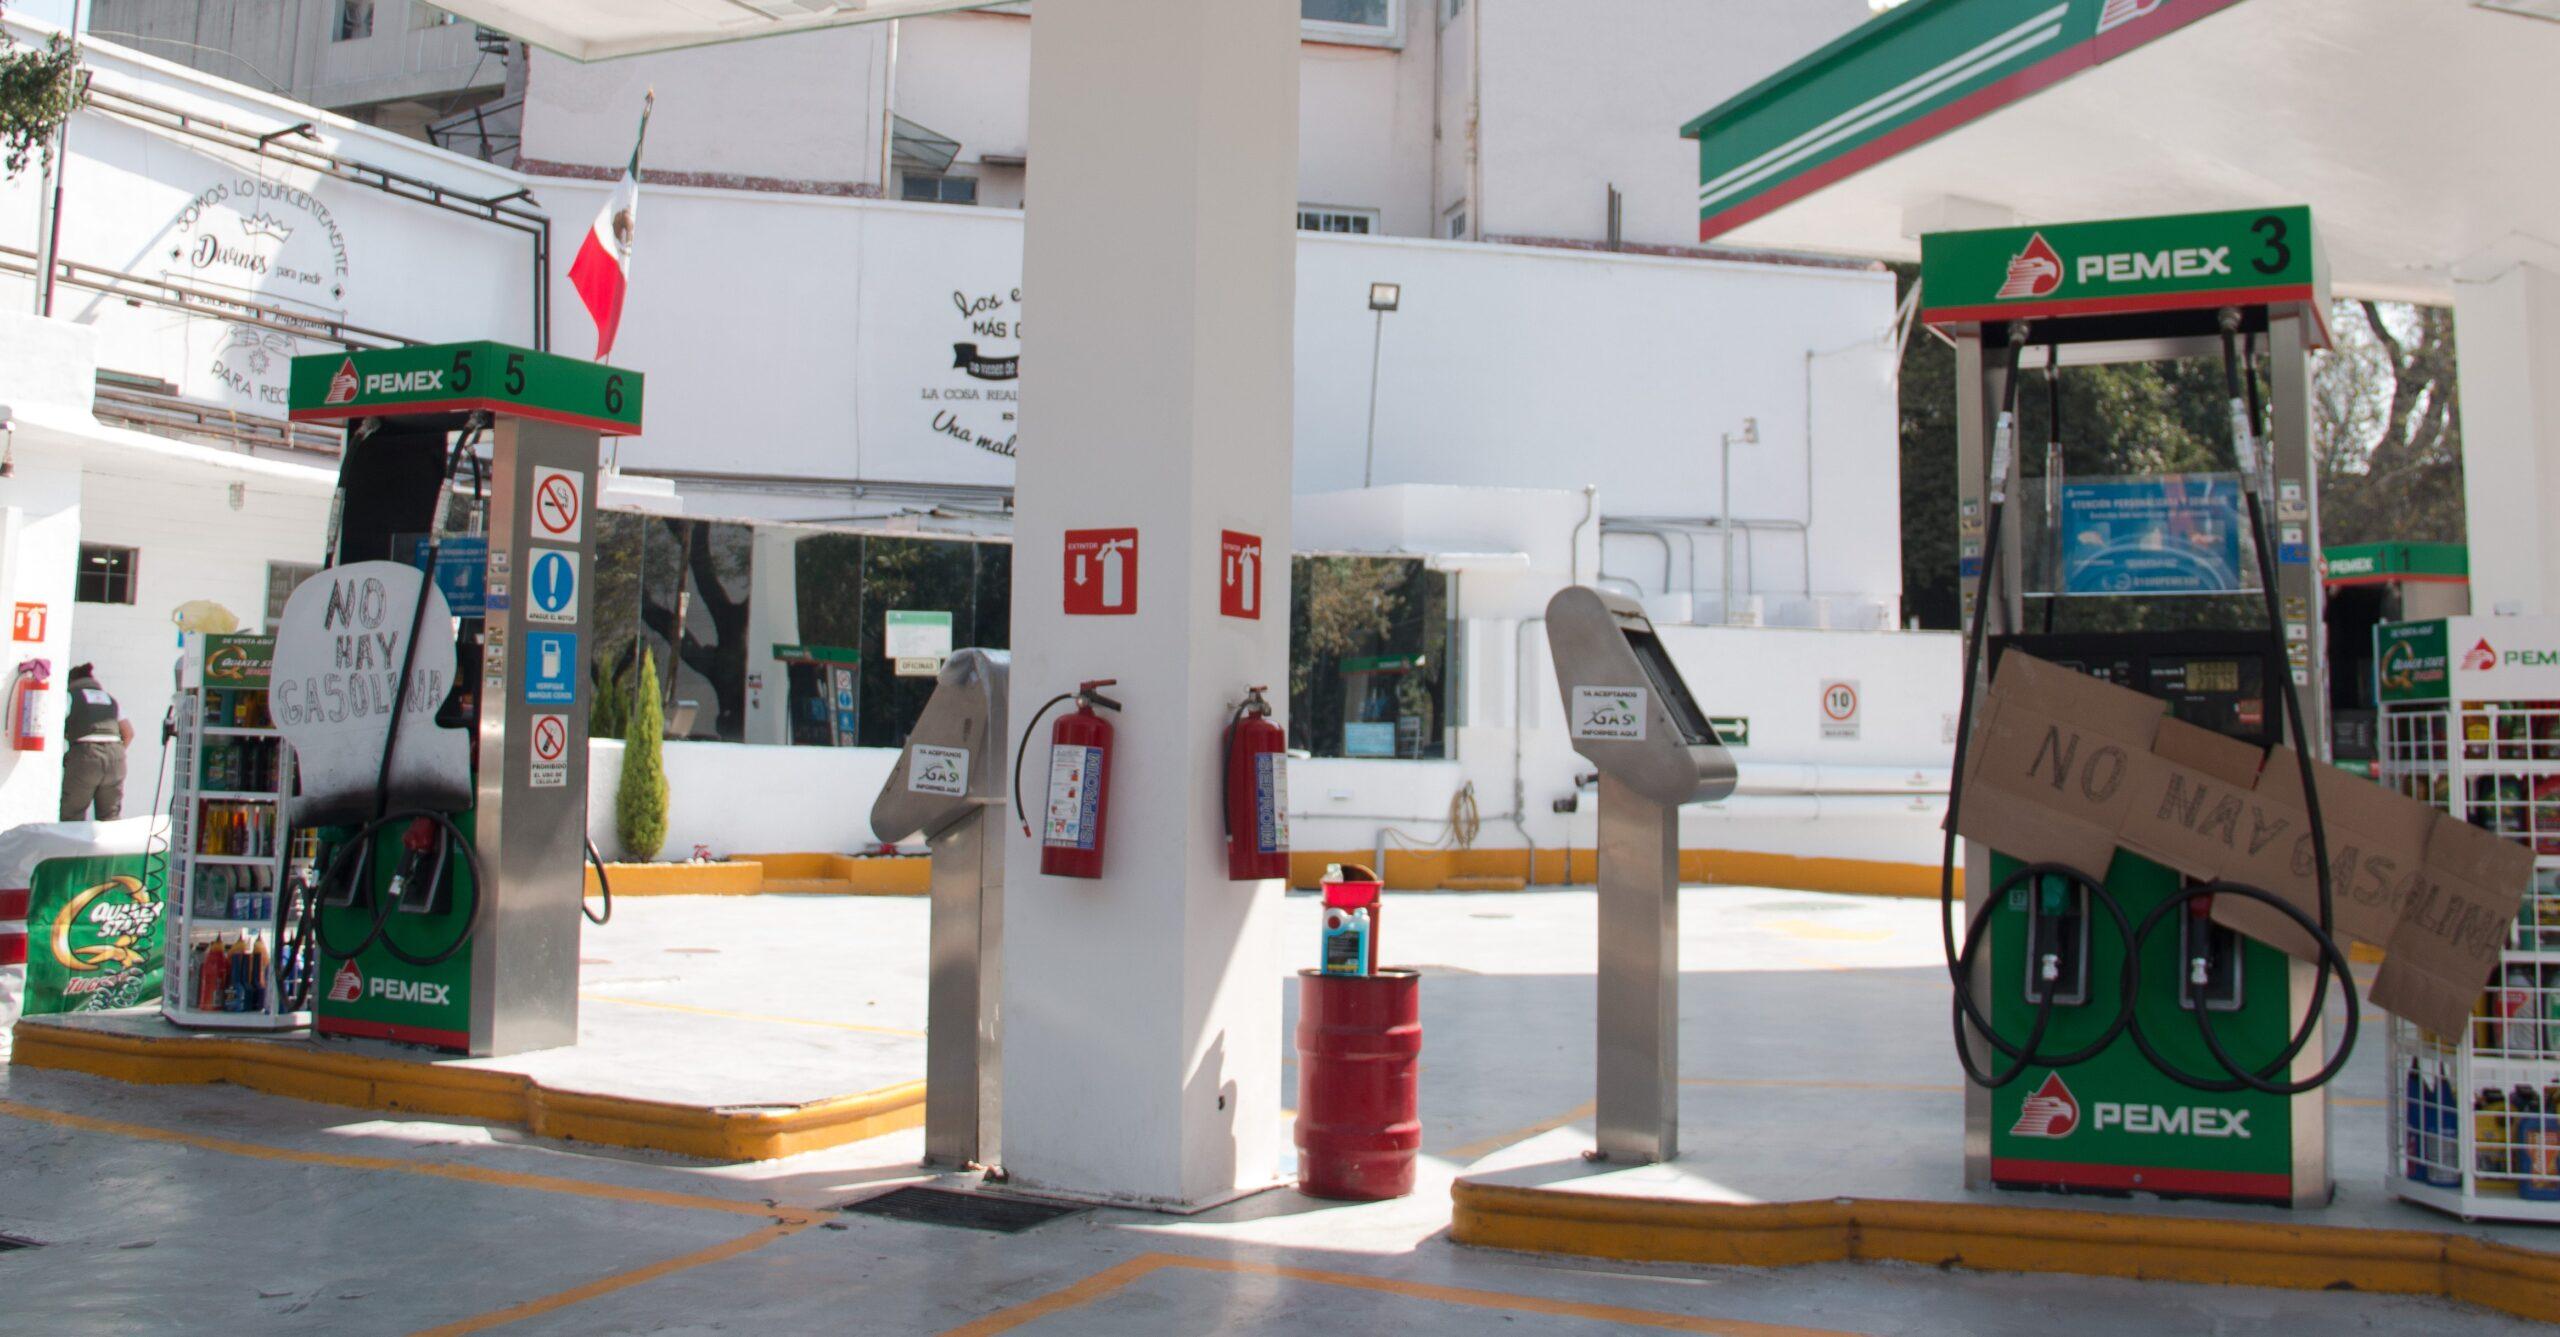 Durante el desabasto, Profeco recibió 91 denuncias contra gasolineras